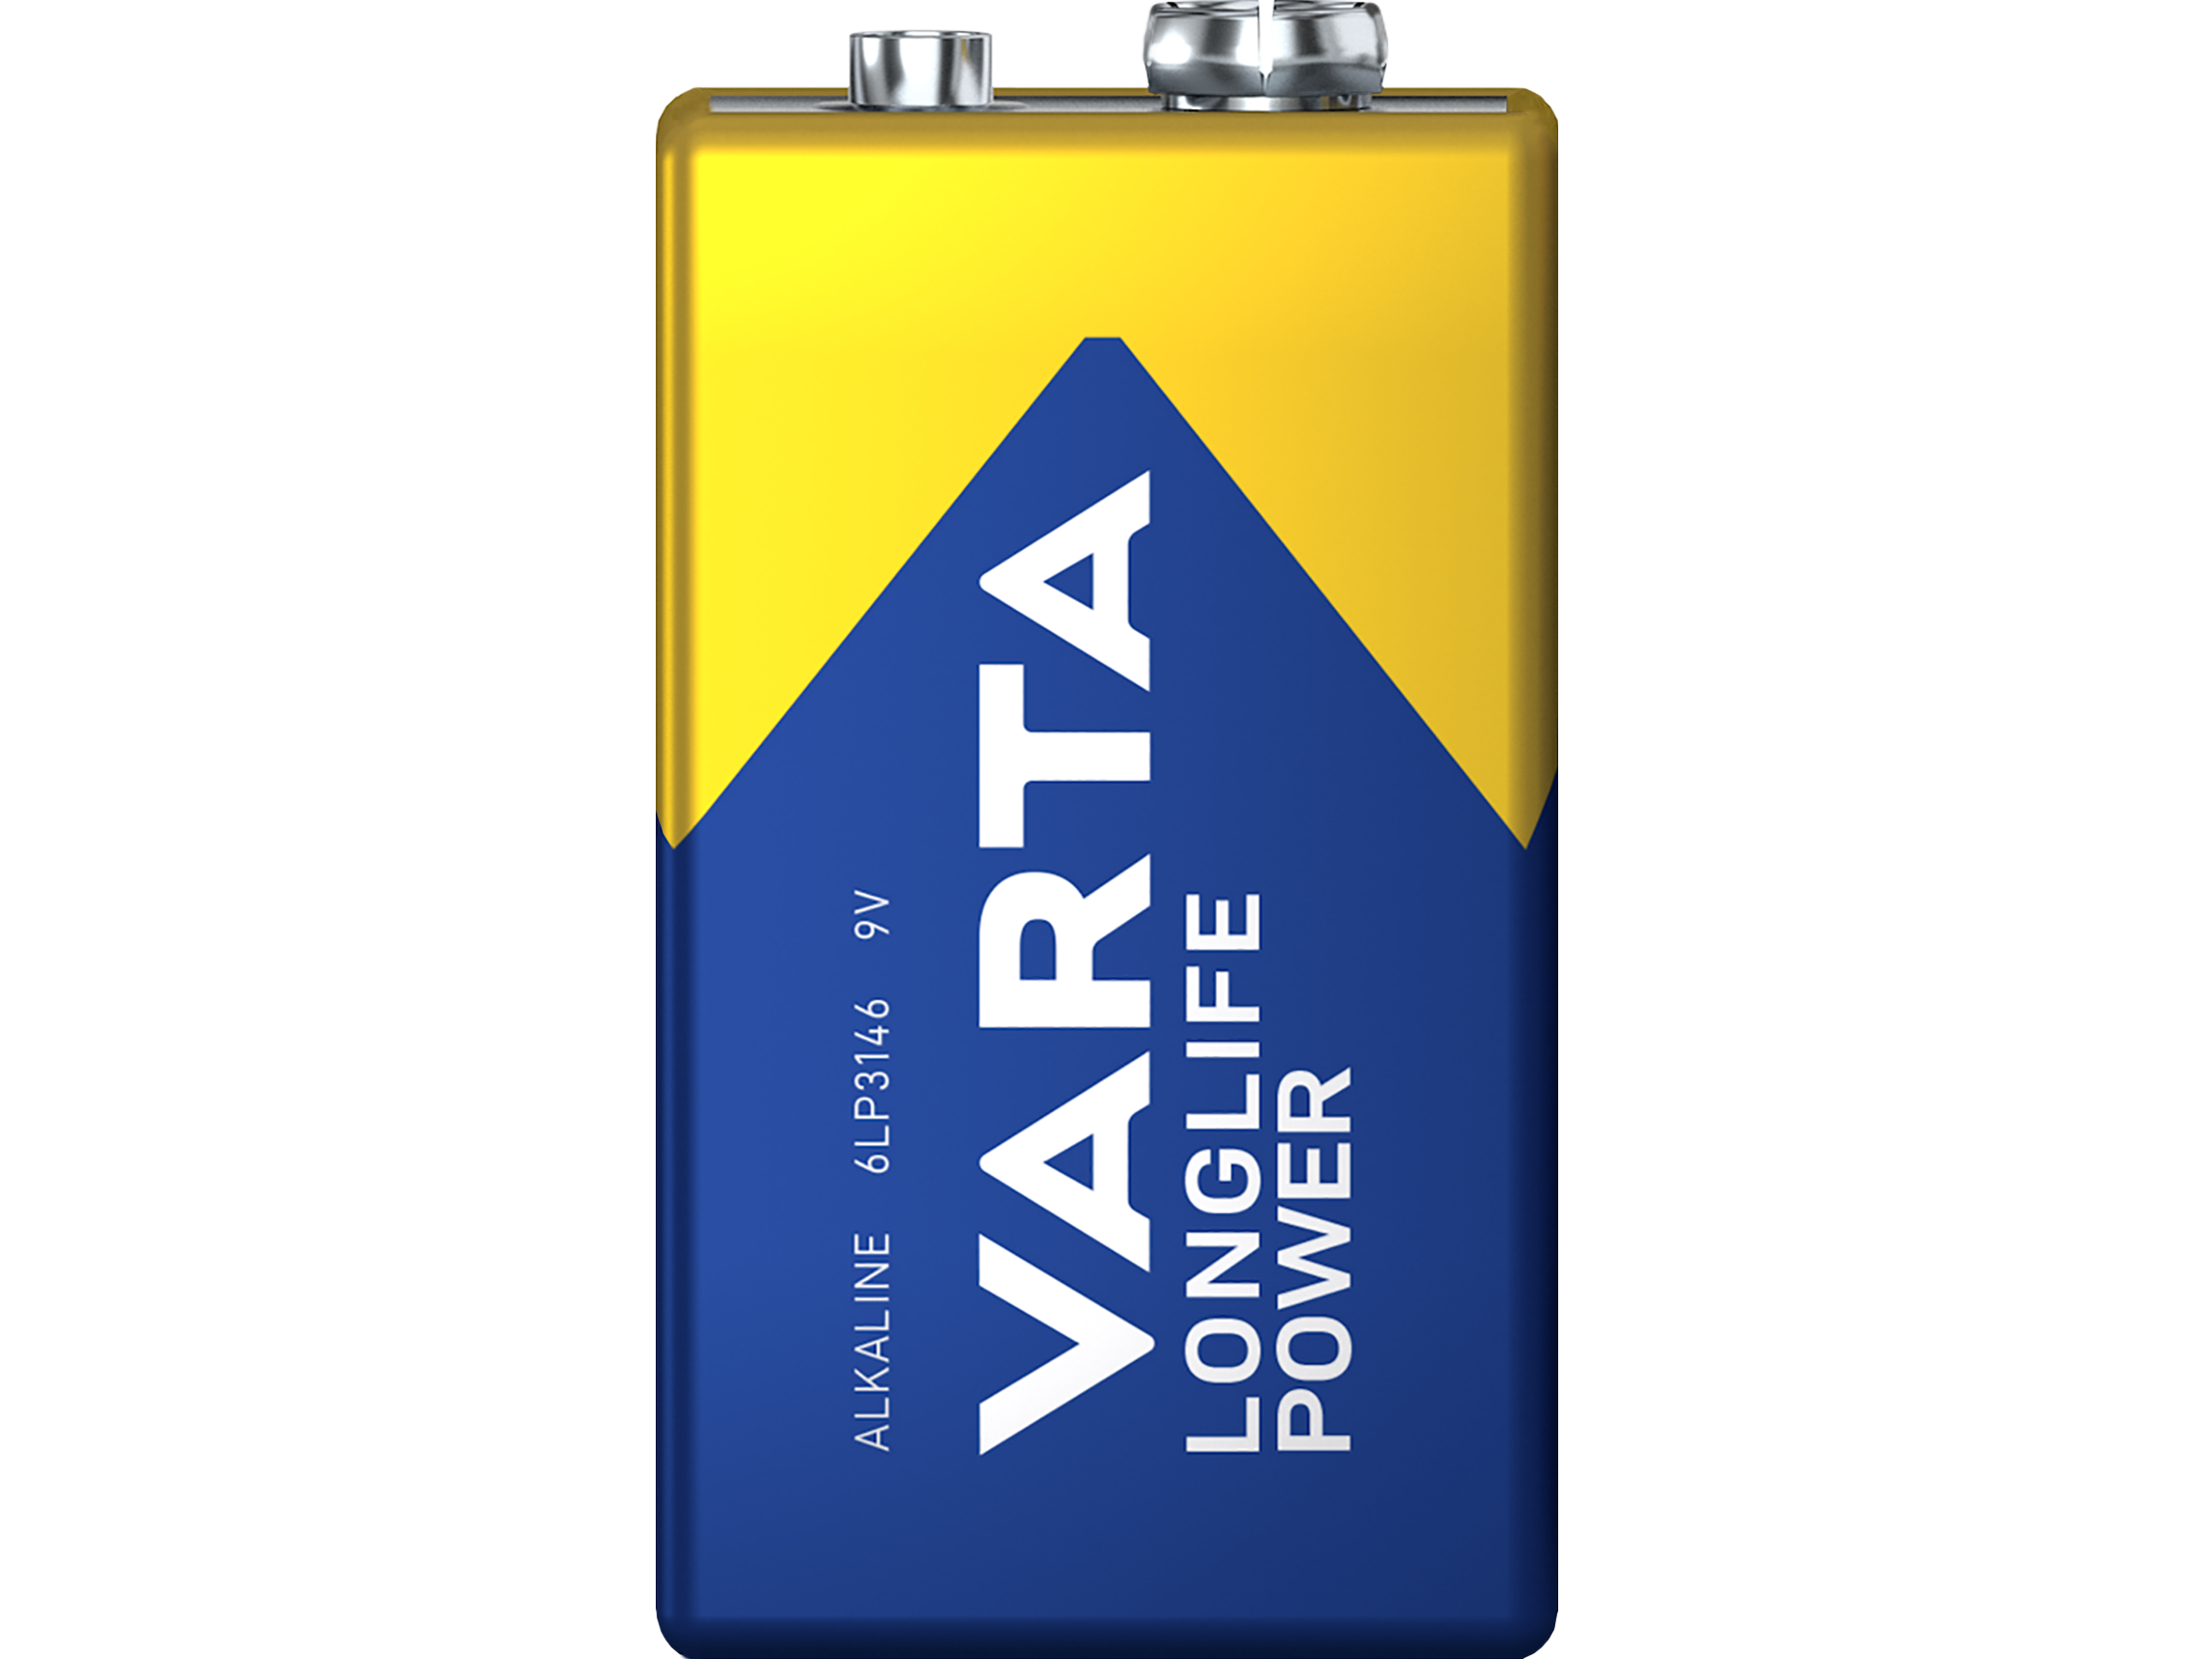 20x-varta-longlife-power-batterie-9-v